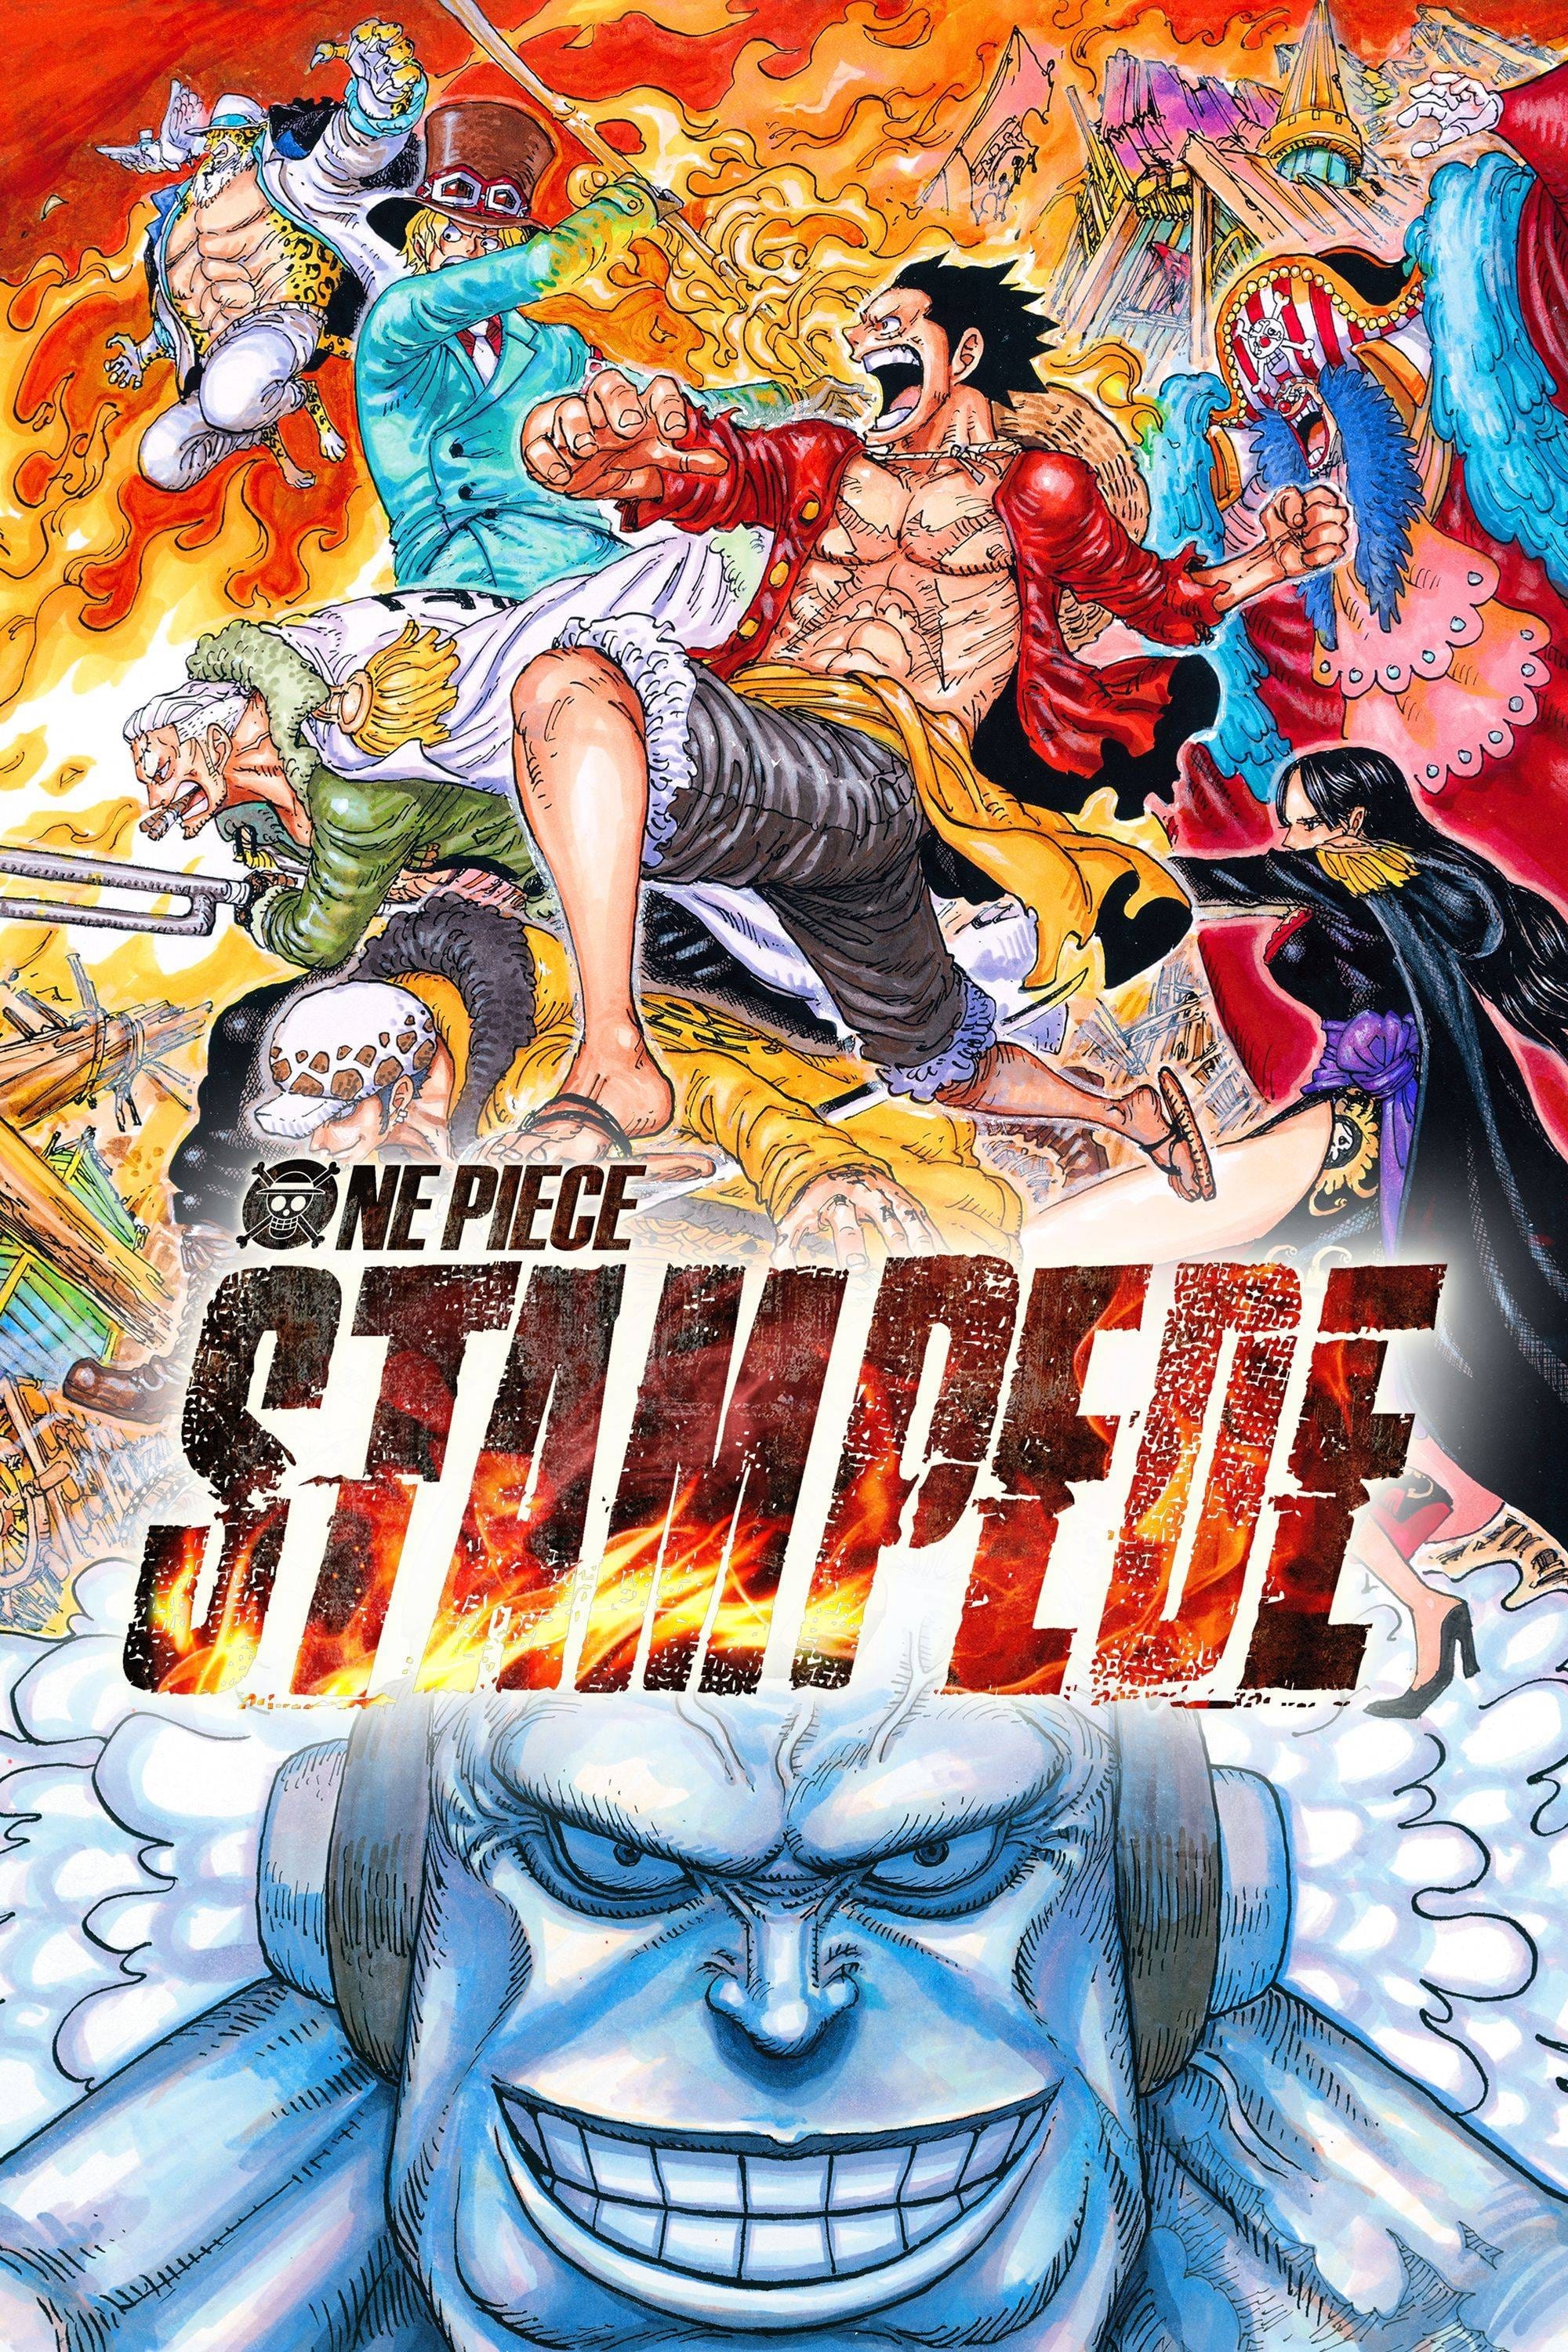 One Piece: Stampede (Dublado)